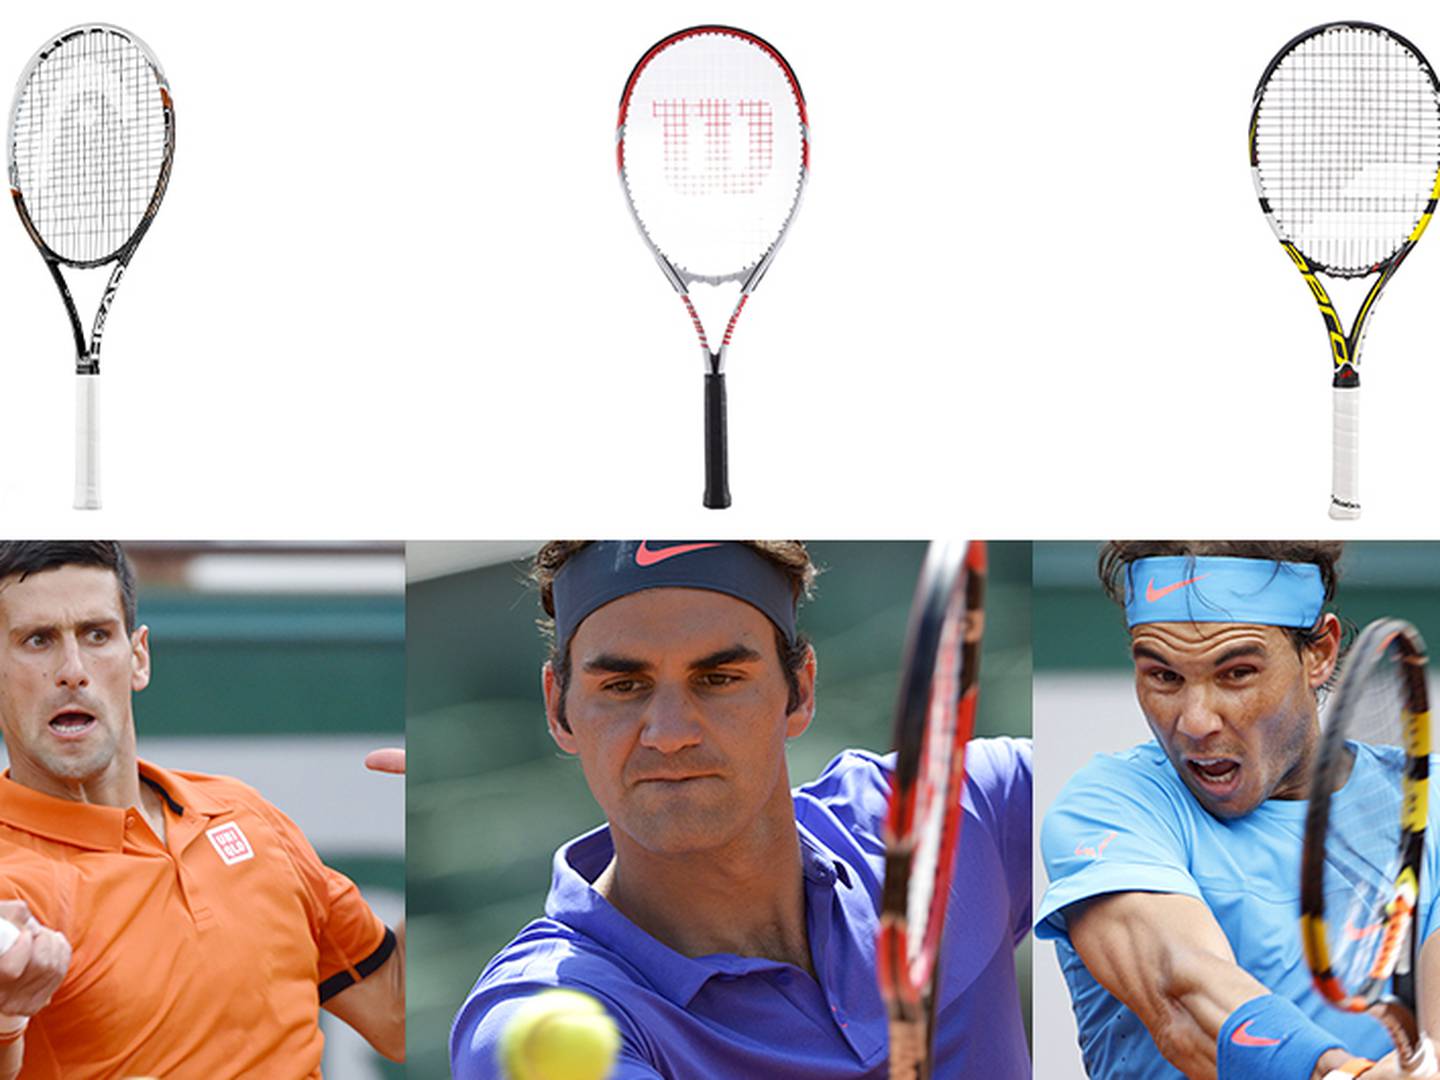 Ajustamiento Incorrecto Vandalir Tenis: Las 7 marcas de raquetas más importantes – Publimetro Perú